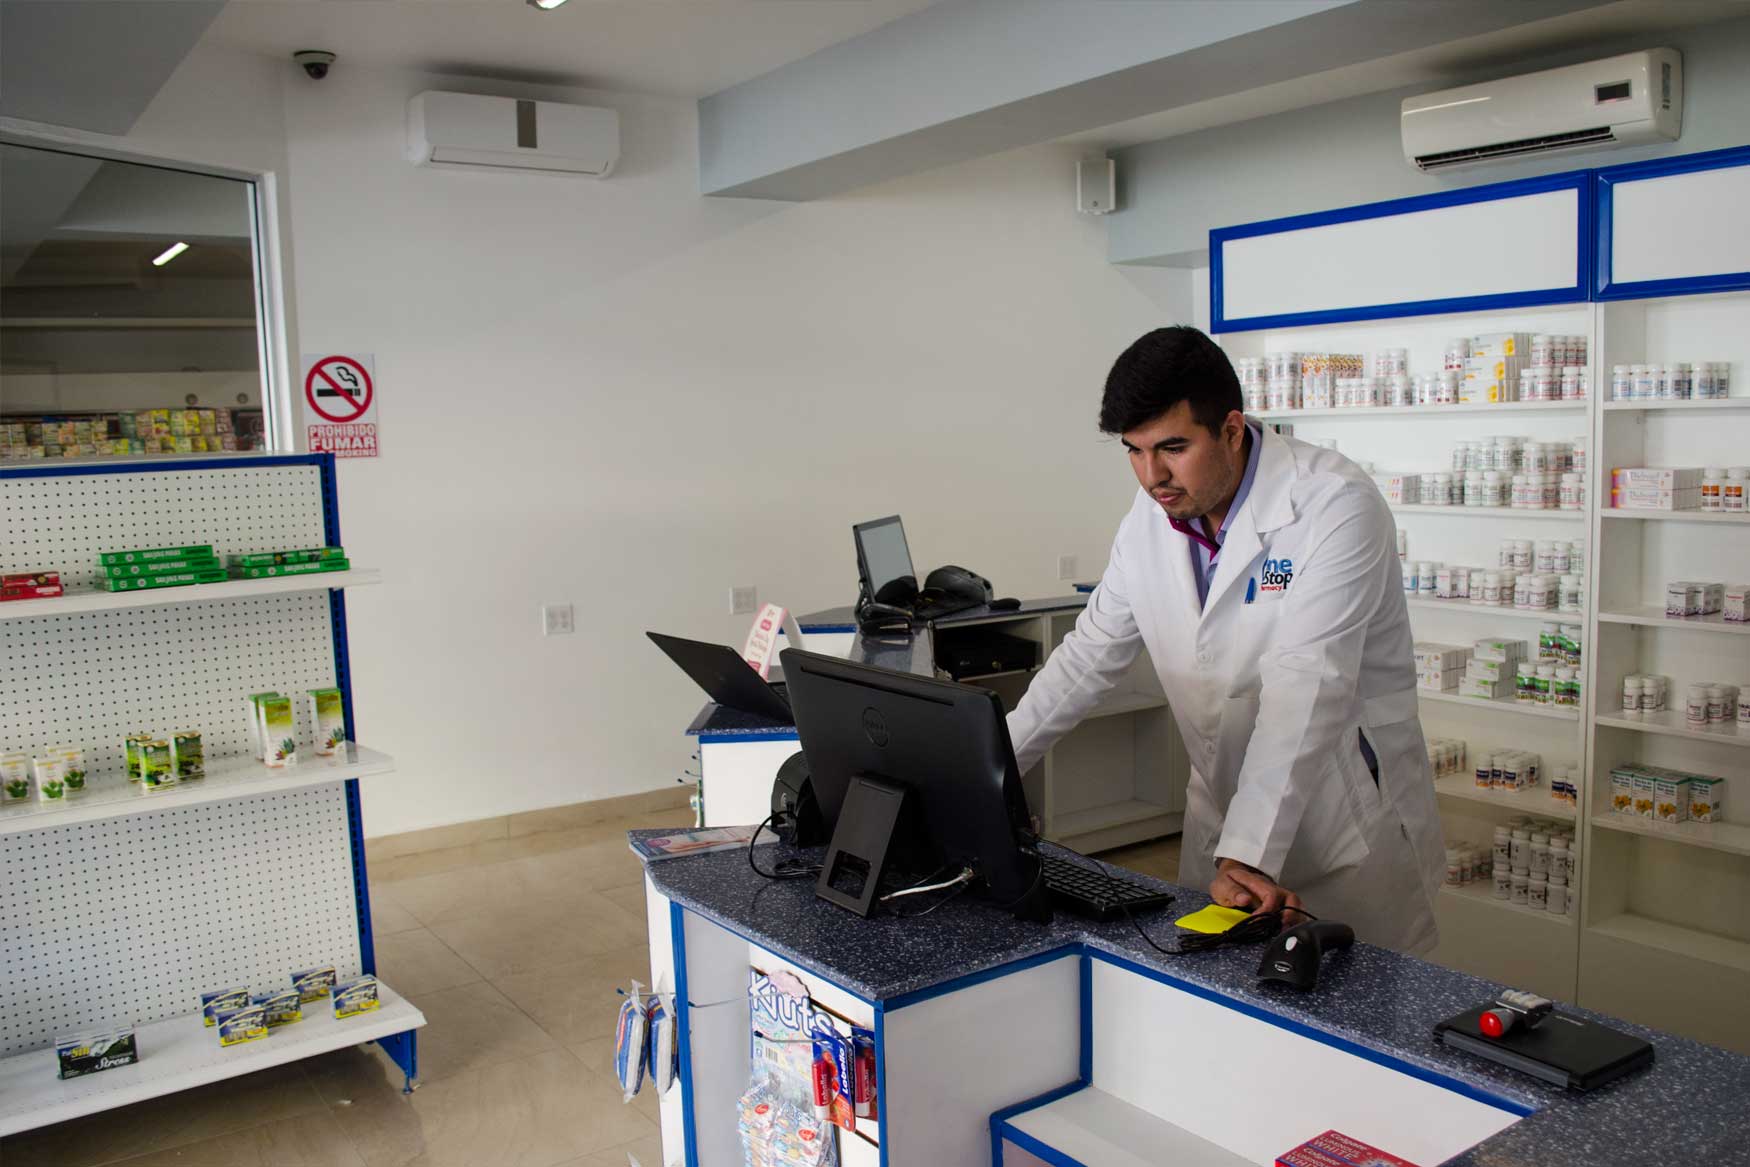 Image from Onte Stop Pharmacy in MediPlaza Los Algodones